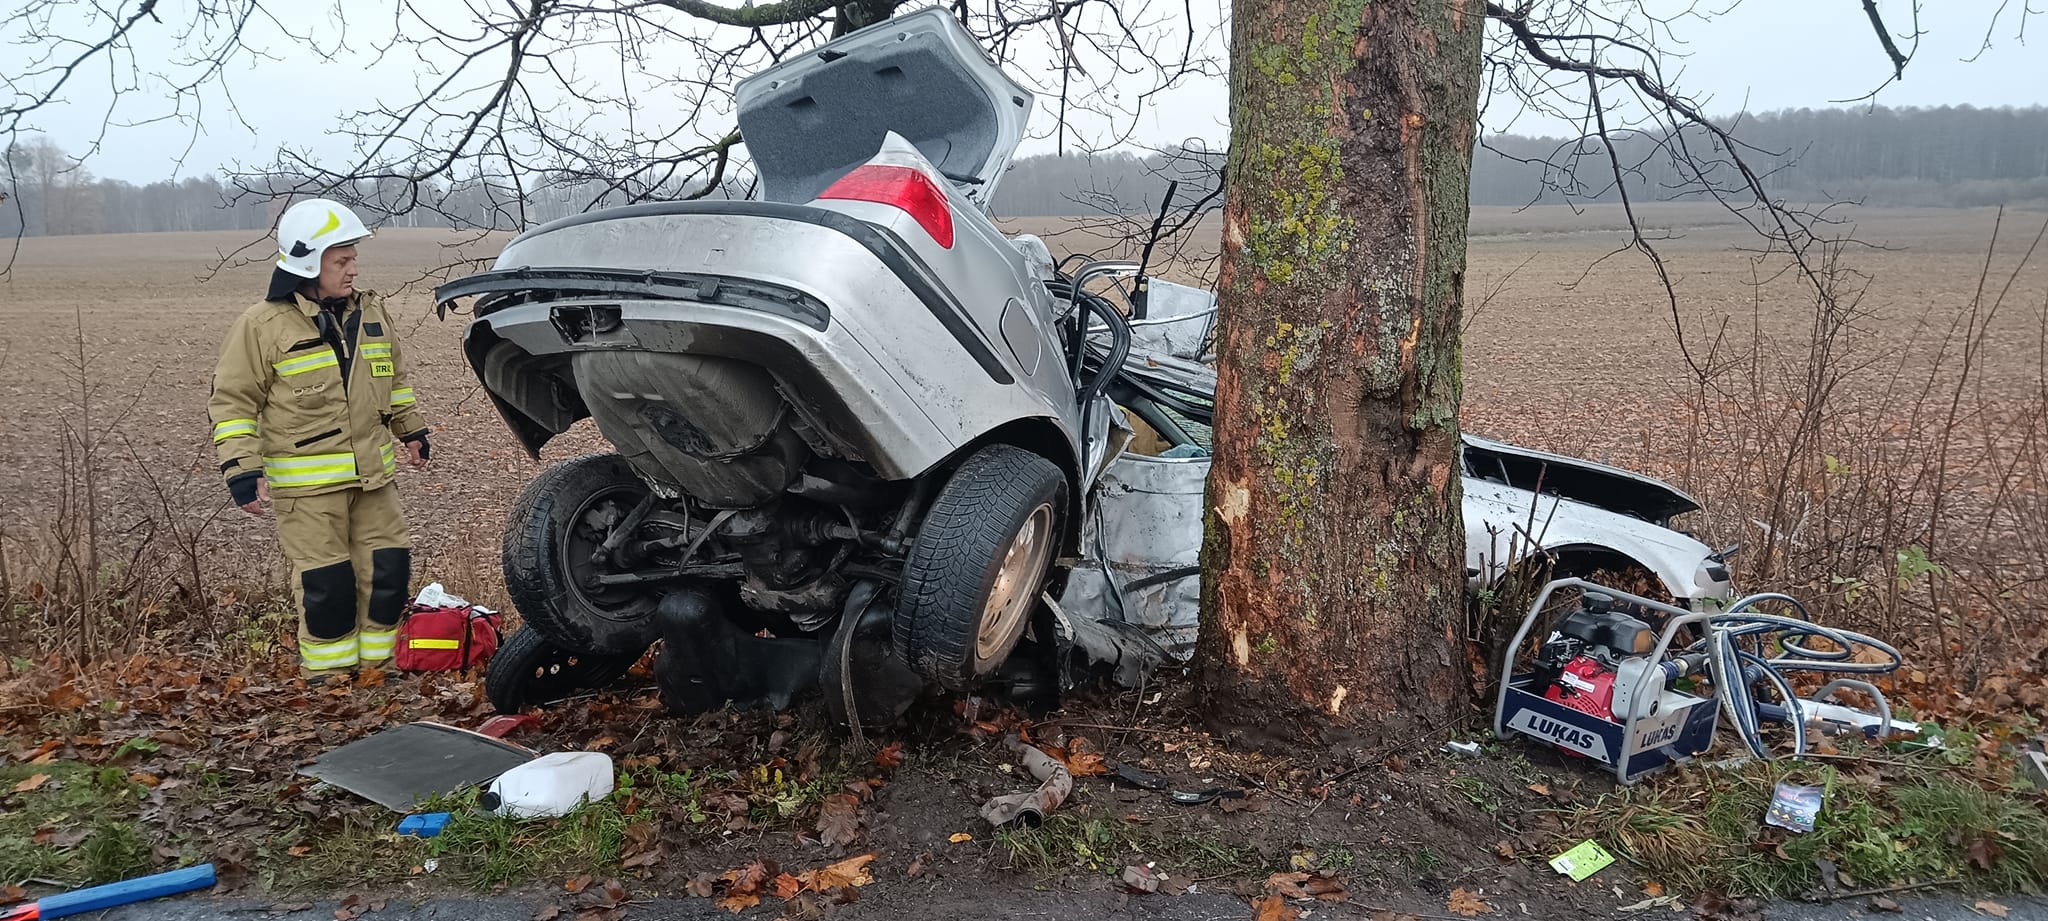 Tragiczny wypadek BMW. Samochód uderzył w drzewo, kobieta w szpitalu ruch drogowy Olsztyn, Wiadomości, zPAP